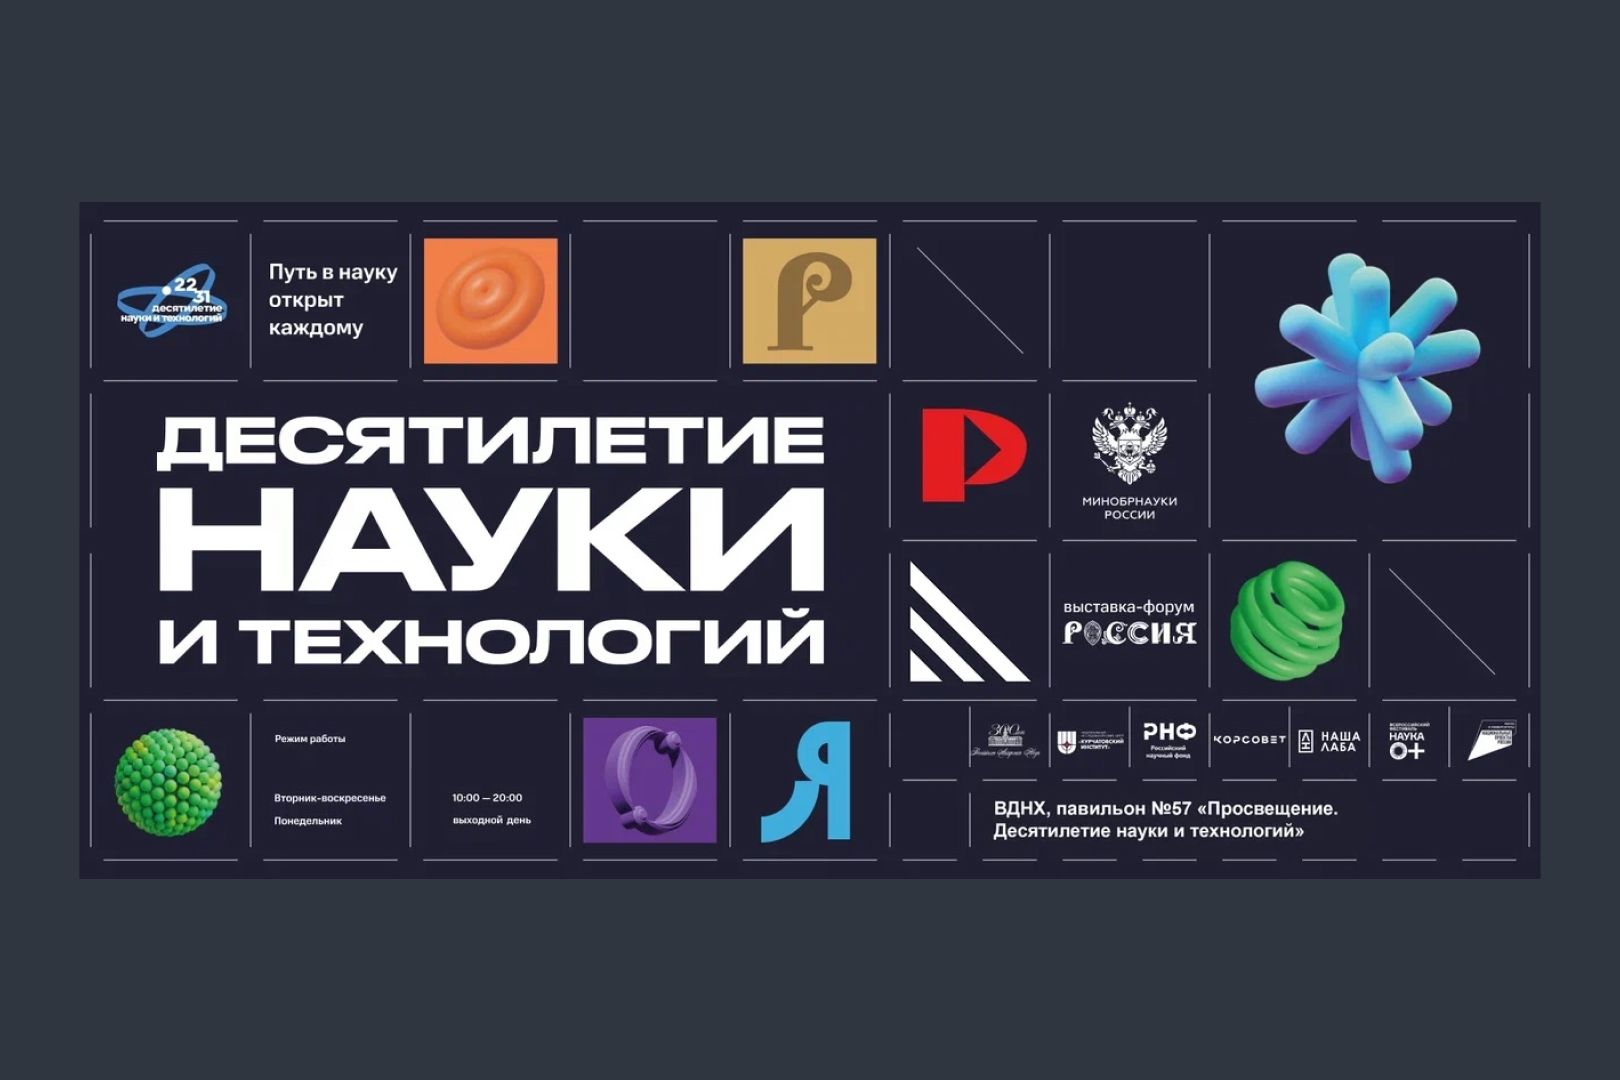 Открылась обновленная экспозиция «Десятилетие науки и технологий» на Международной  выставке-форуме «Россия» 